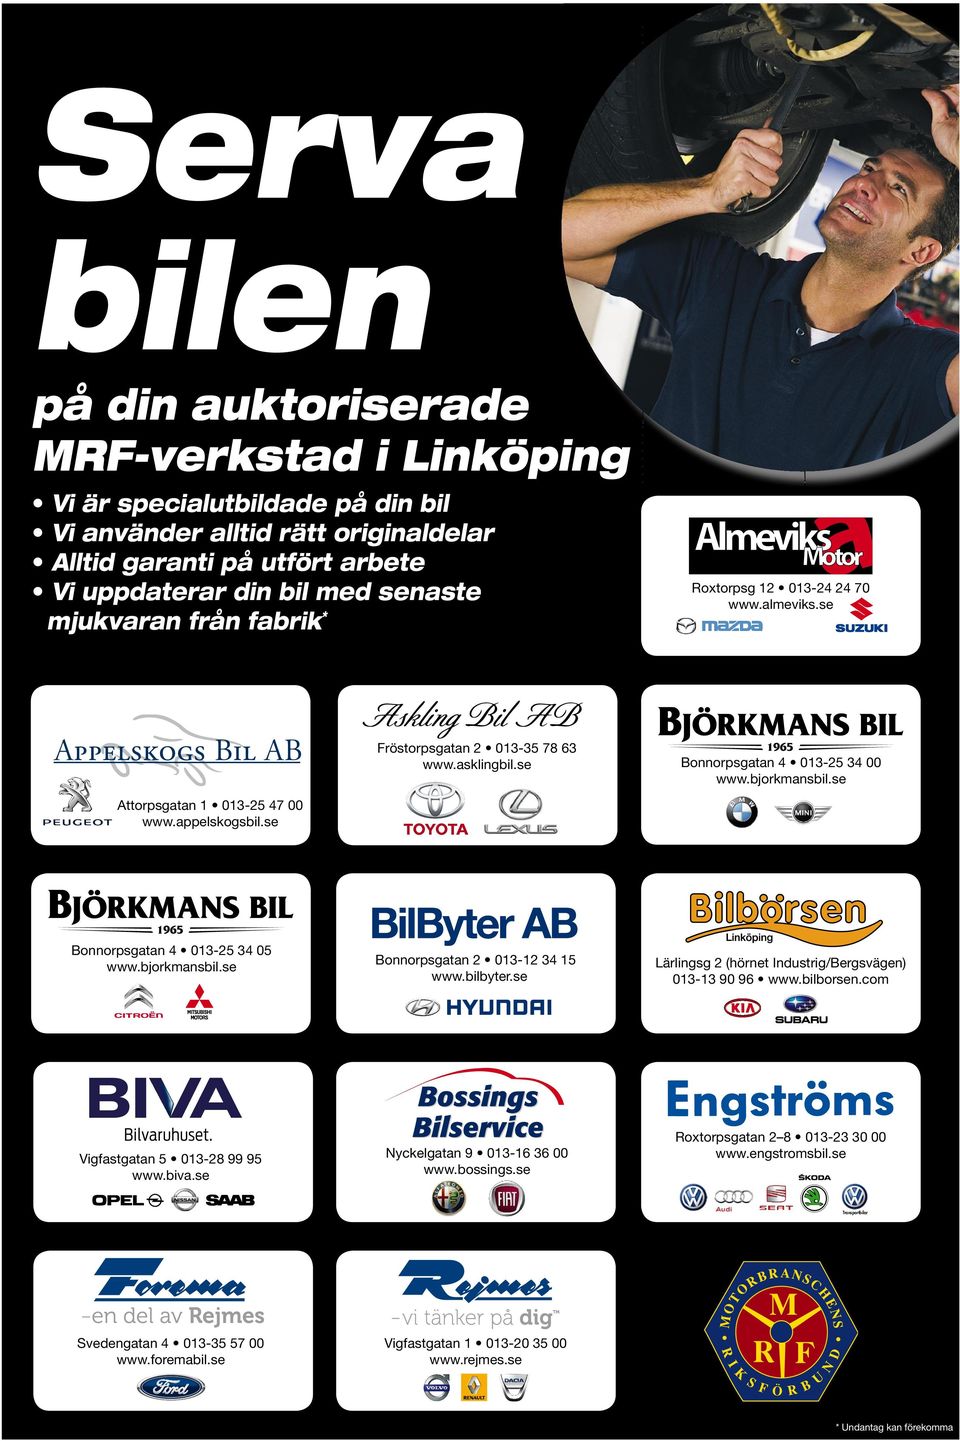 appelskogsbil.se "ONNORPSGATAN s www.bjorkmansbil.se 6IGFASTGATAN s www.biva.se "ONNORPSGATAN s www.bilbyter.se.yckelgatan s www.bossings.